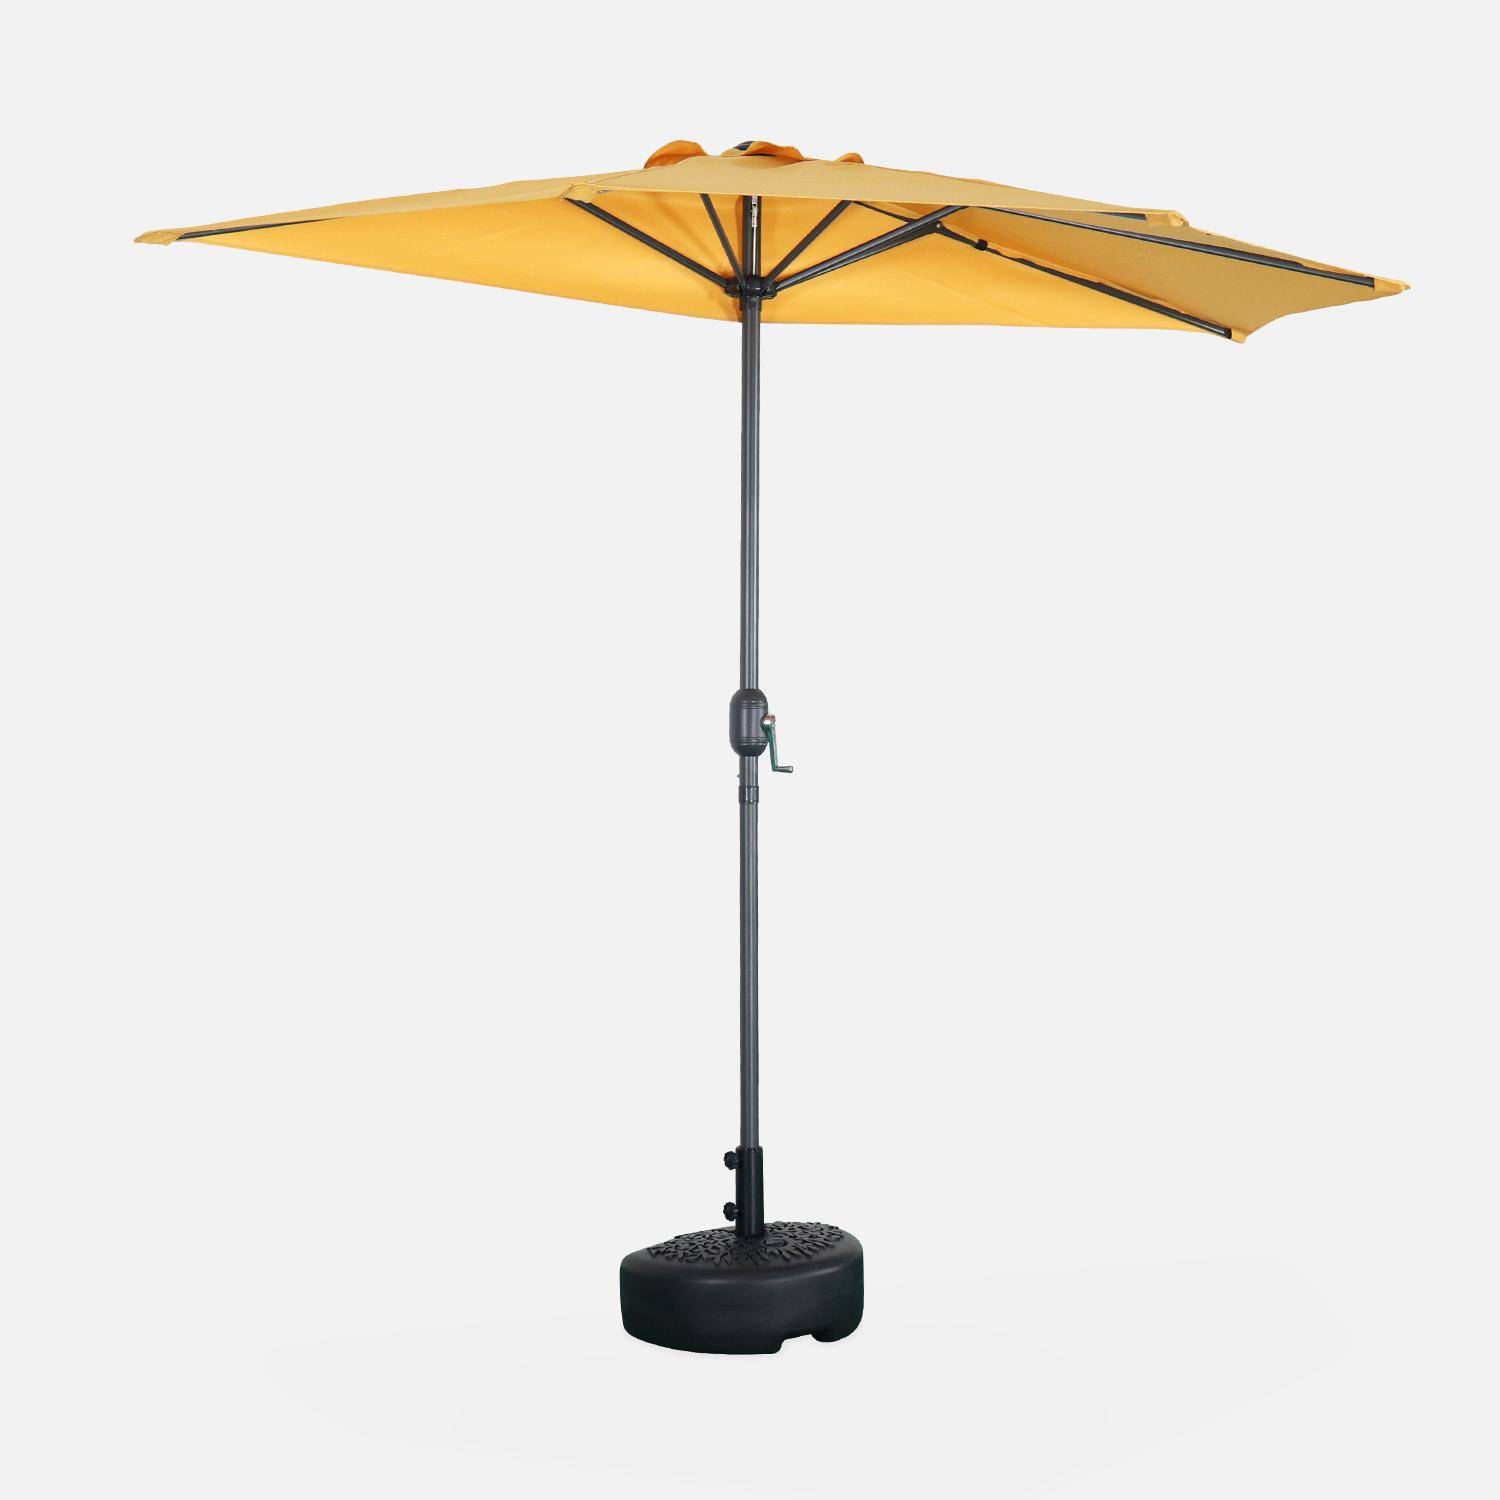  Parasol de balcon Ø250cm  – CALVI – Demi-parasol droit, mât en aluminium avec manivelle d’ouverture, toile moutarde Photo1